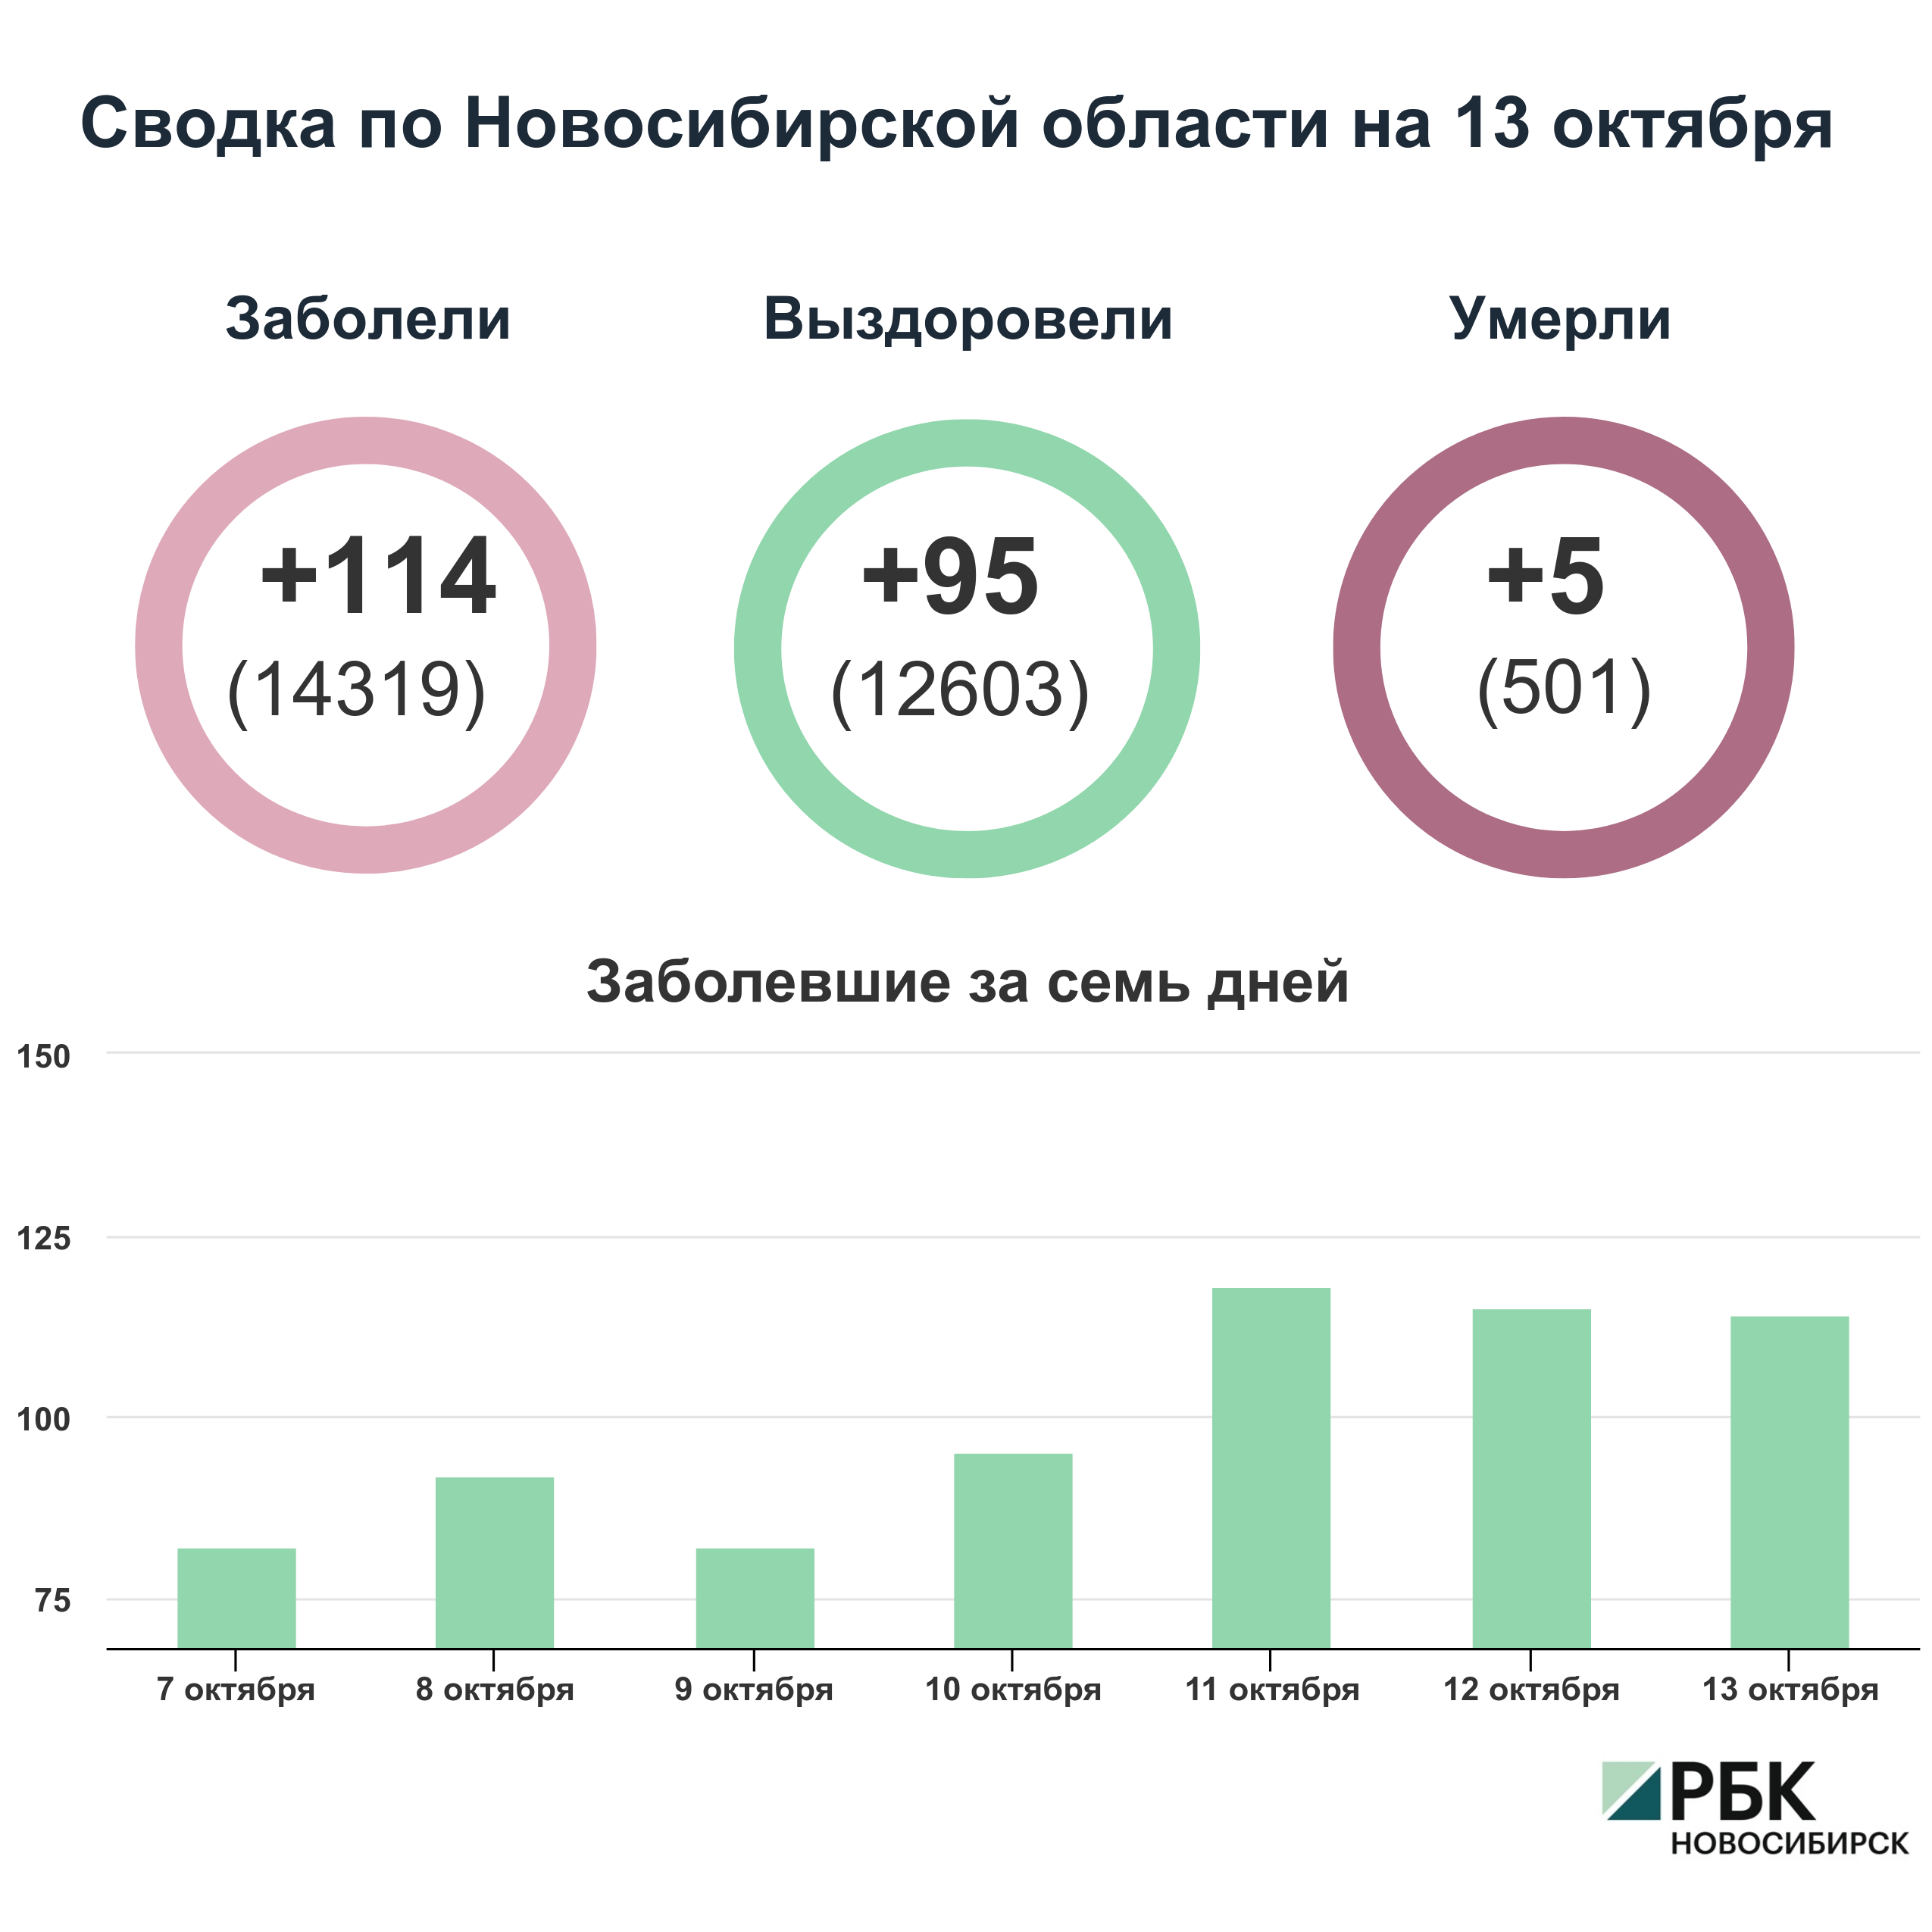 Коронавирус в Новосибирске: сводка на 13 октября